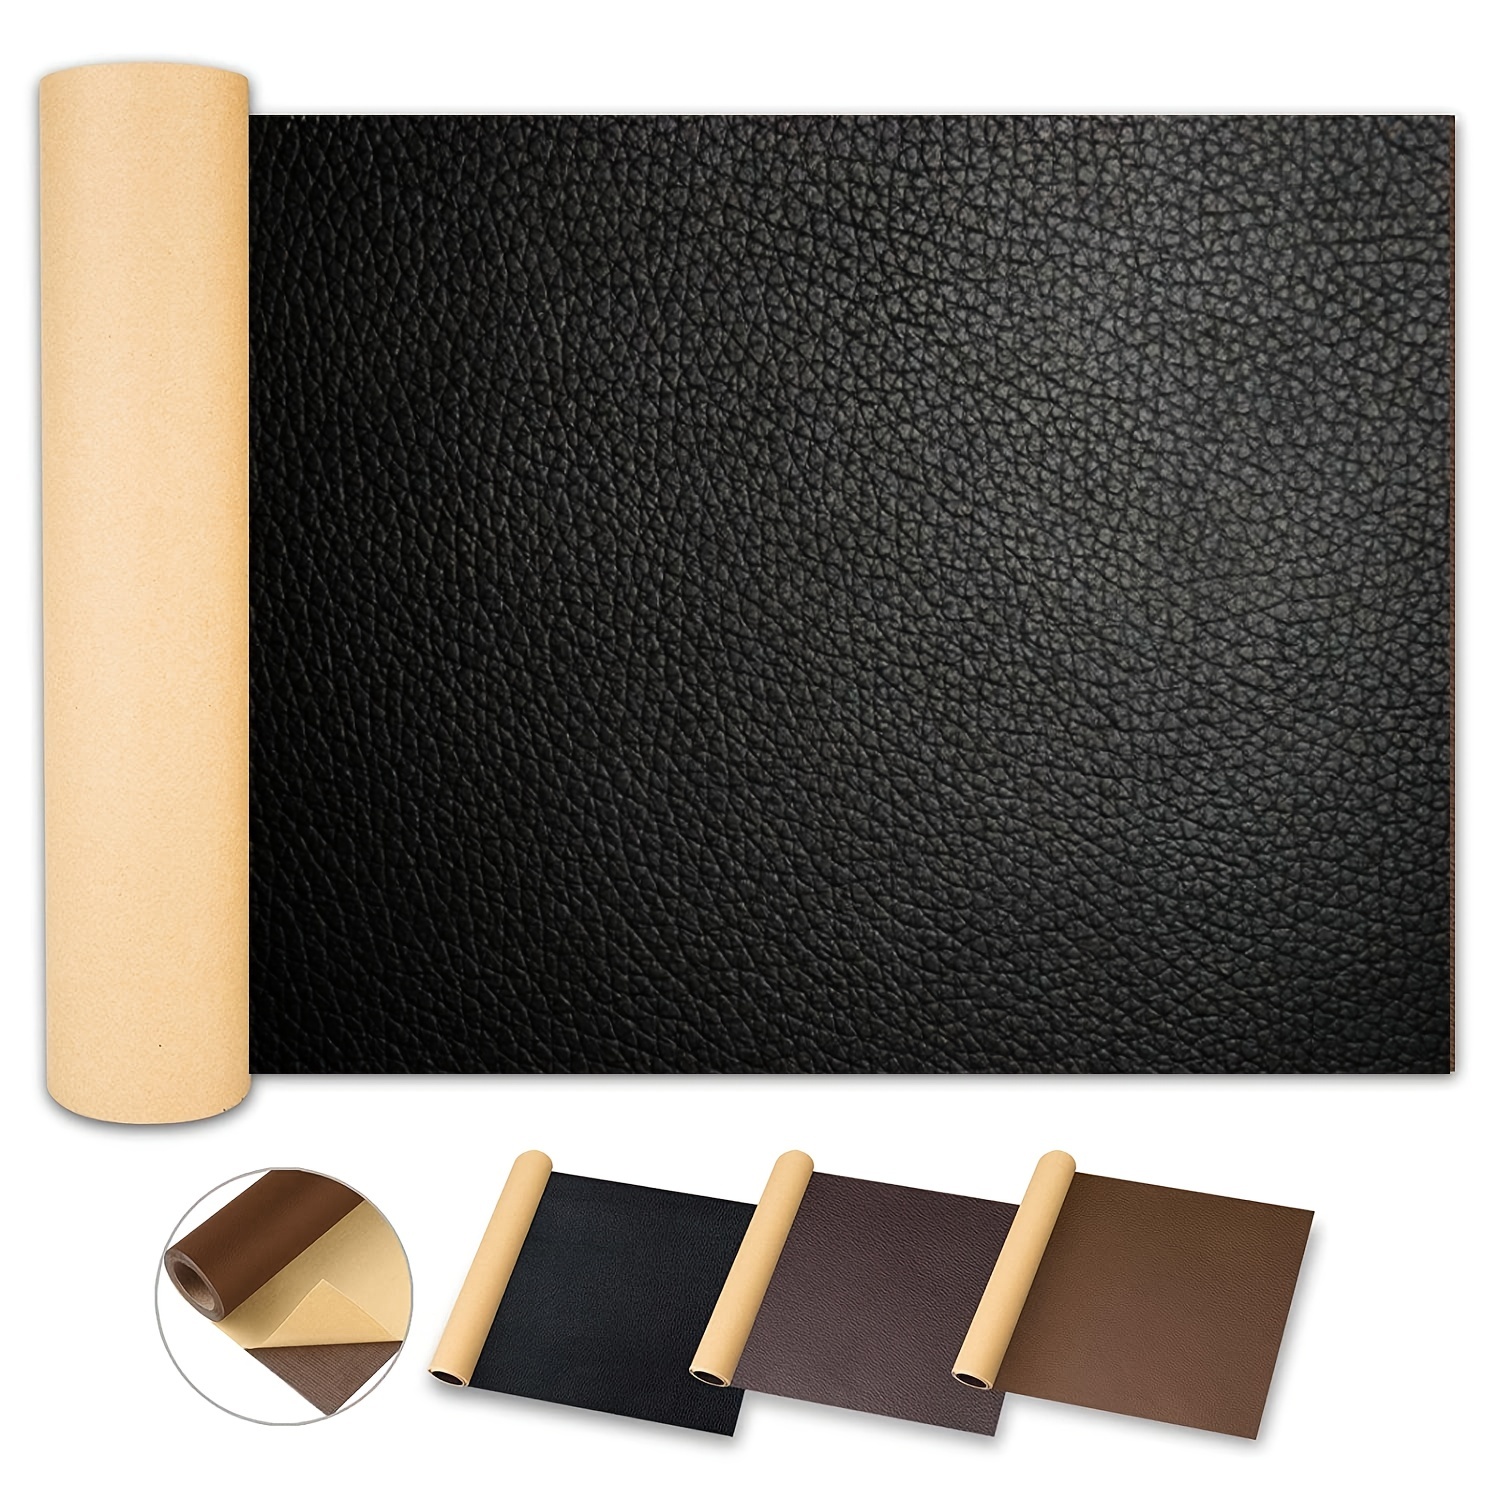 Leather Repair Gel For Furniture Vinyl Pu Leather Scratch - Temu